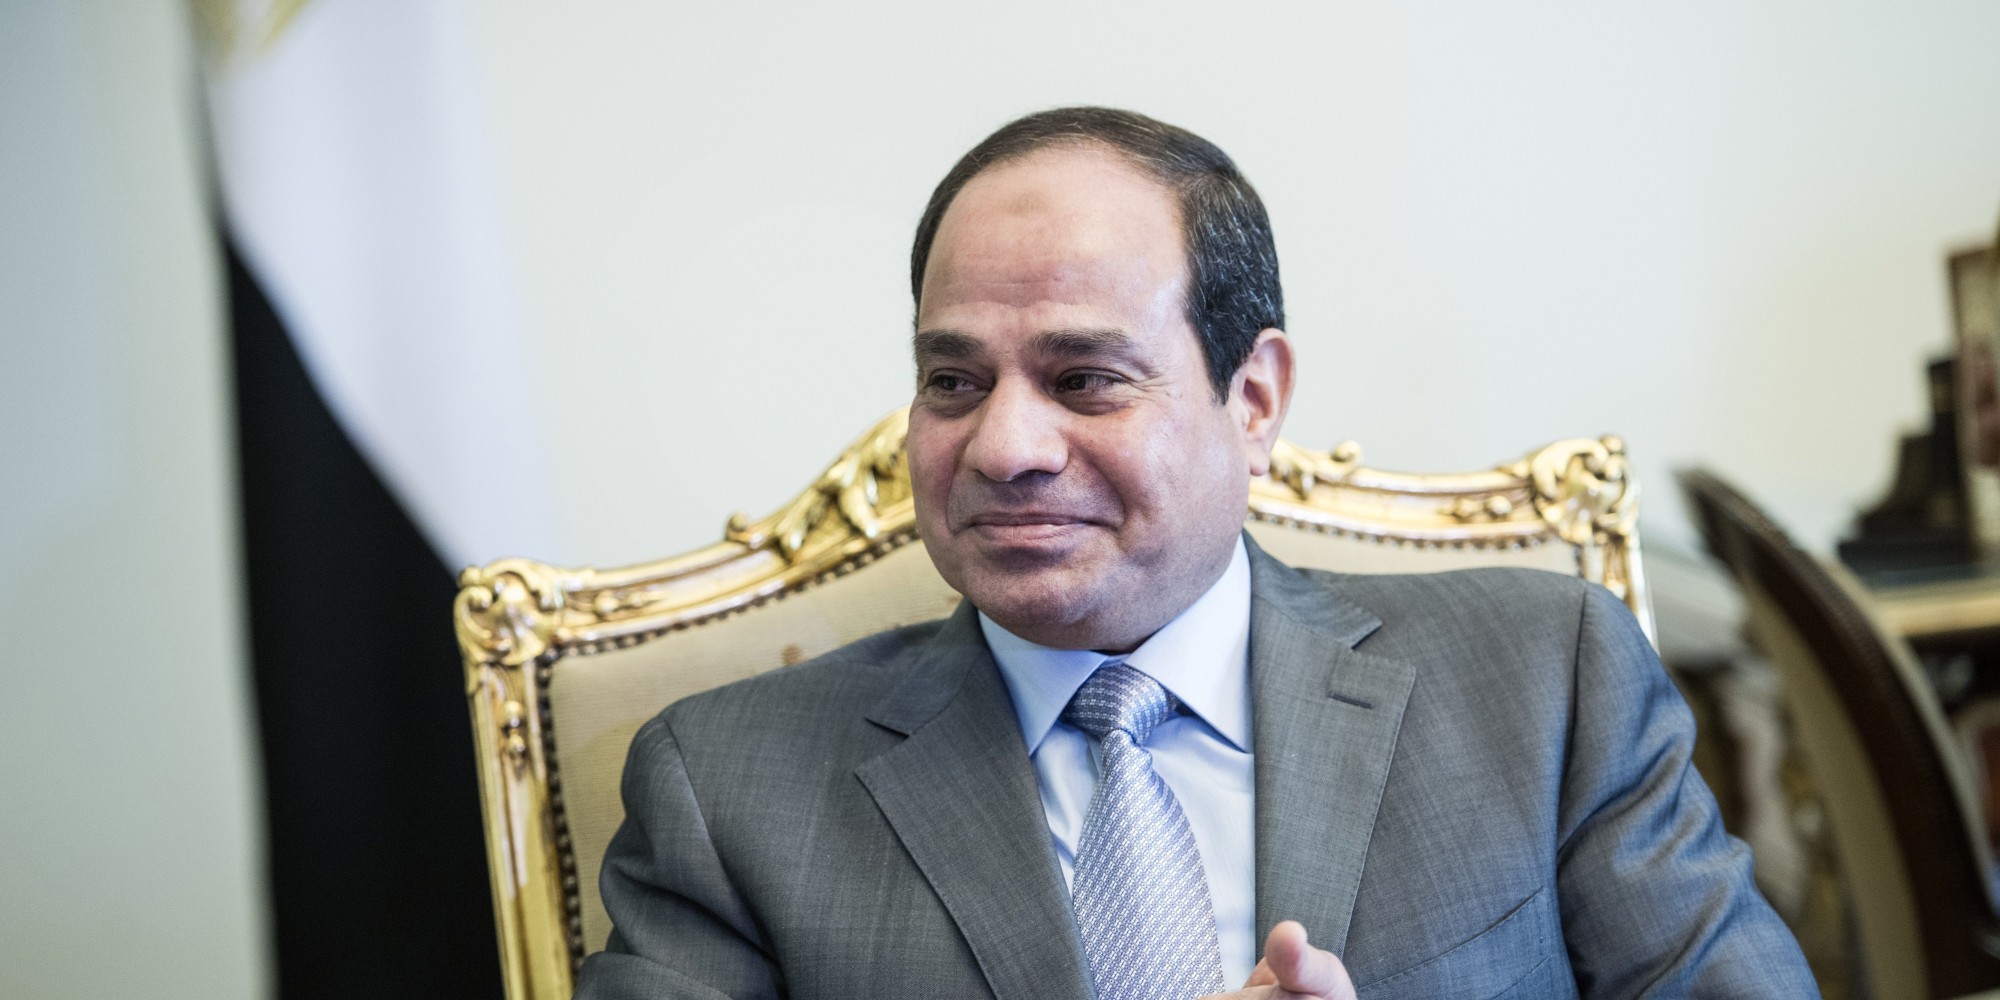   شاهد|| تهنئة الرئيس للمصريين على صفحته الشخصية